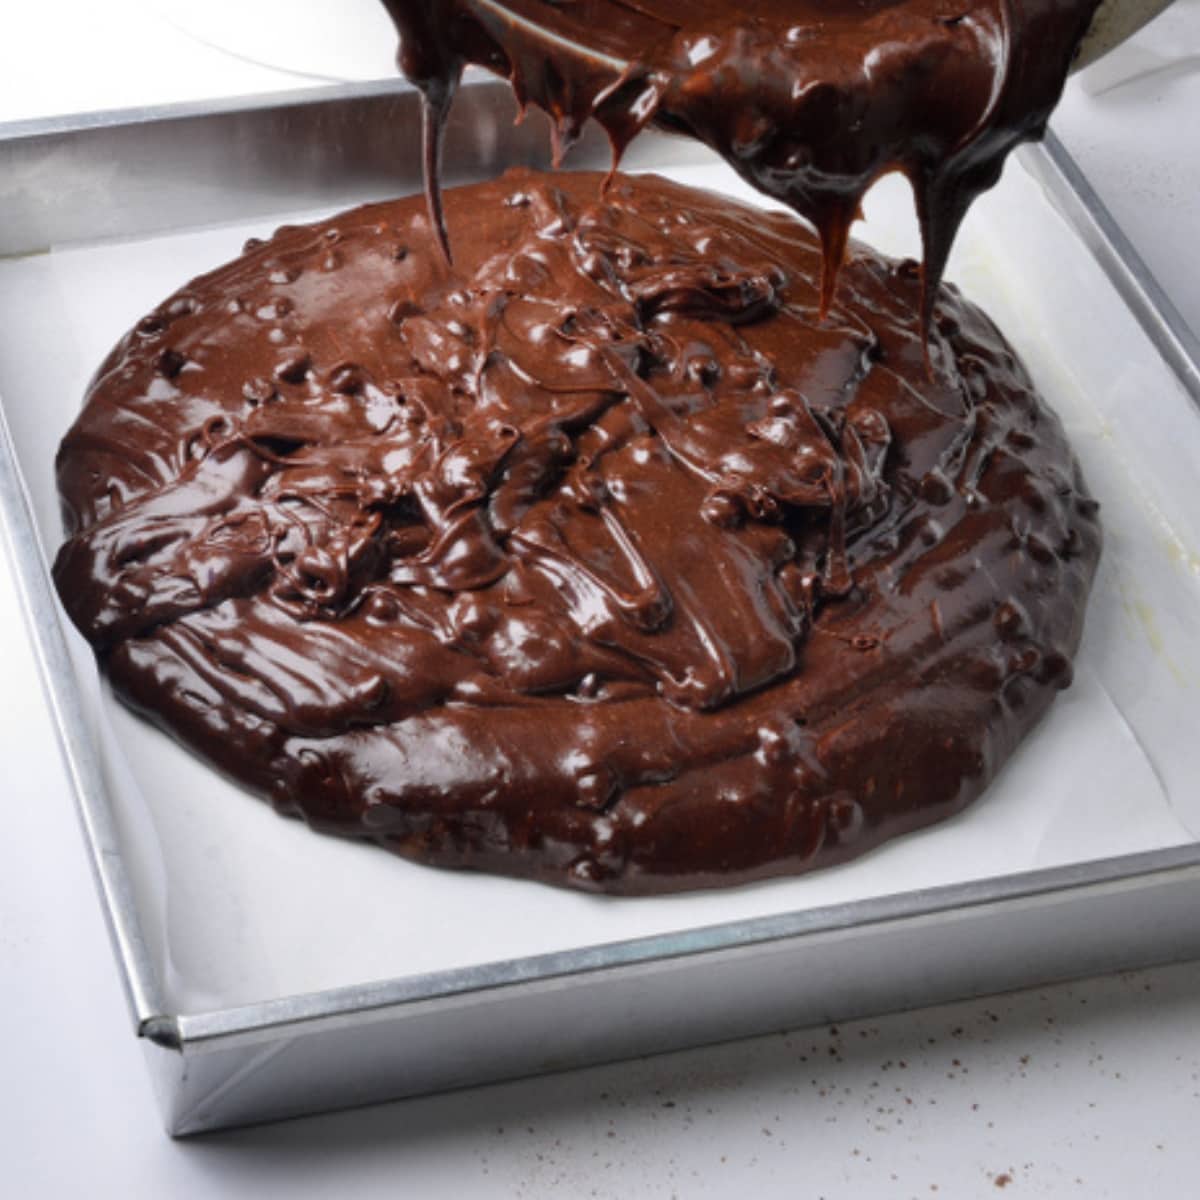 Cake Brownies Mix Poured in Baking Pan